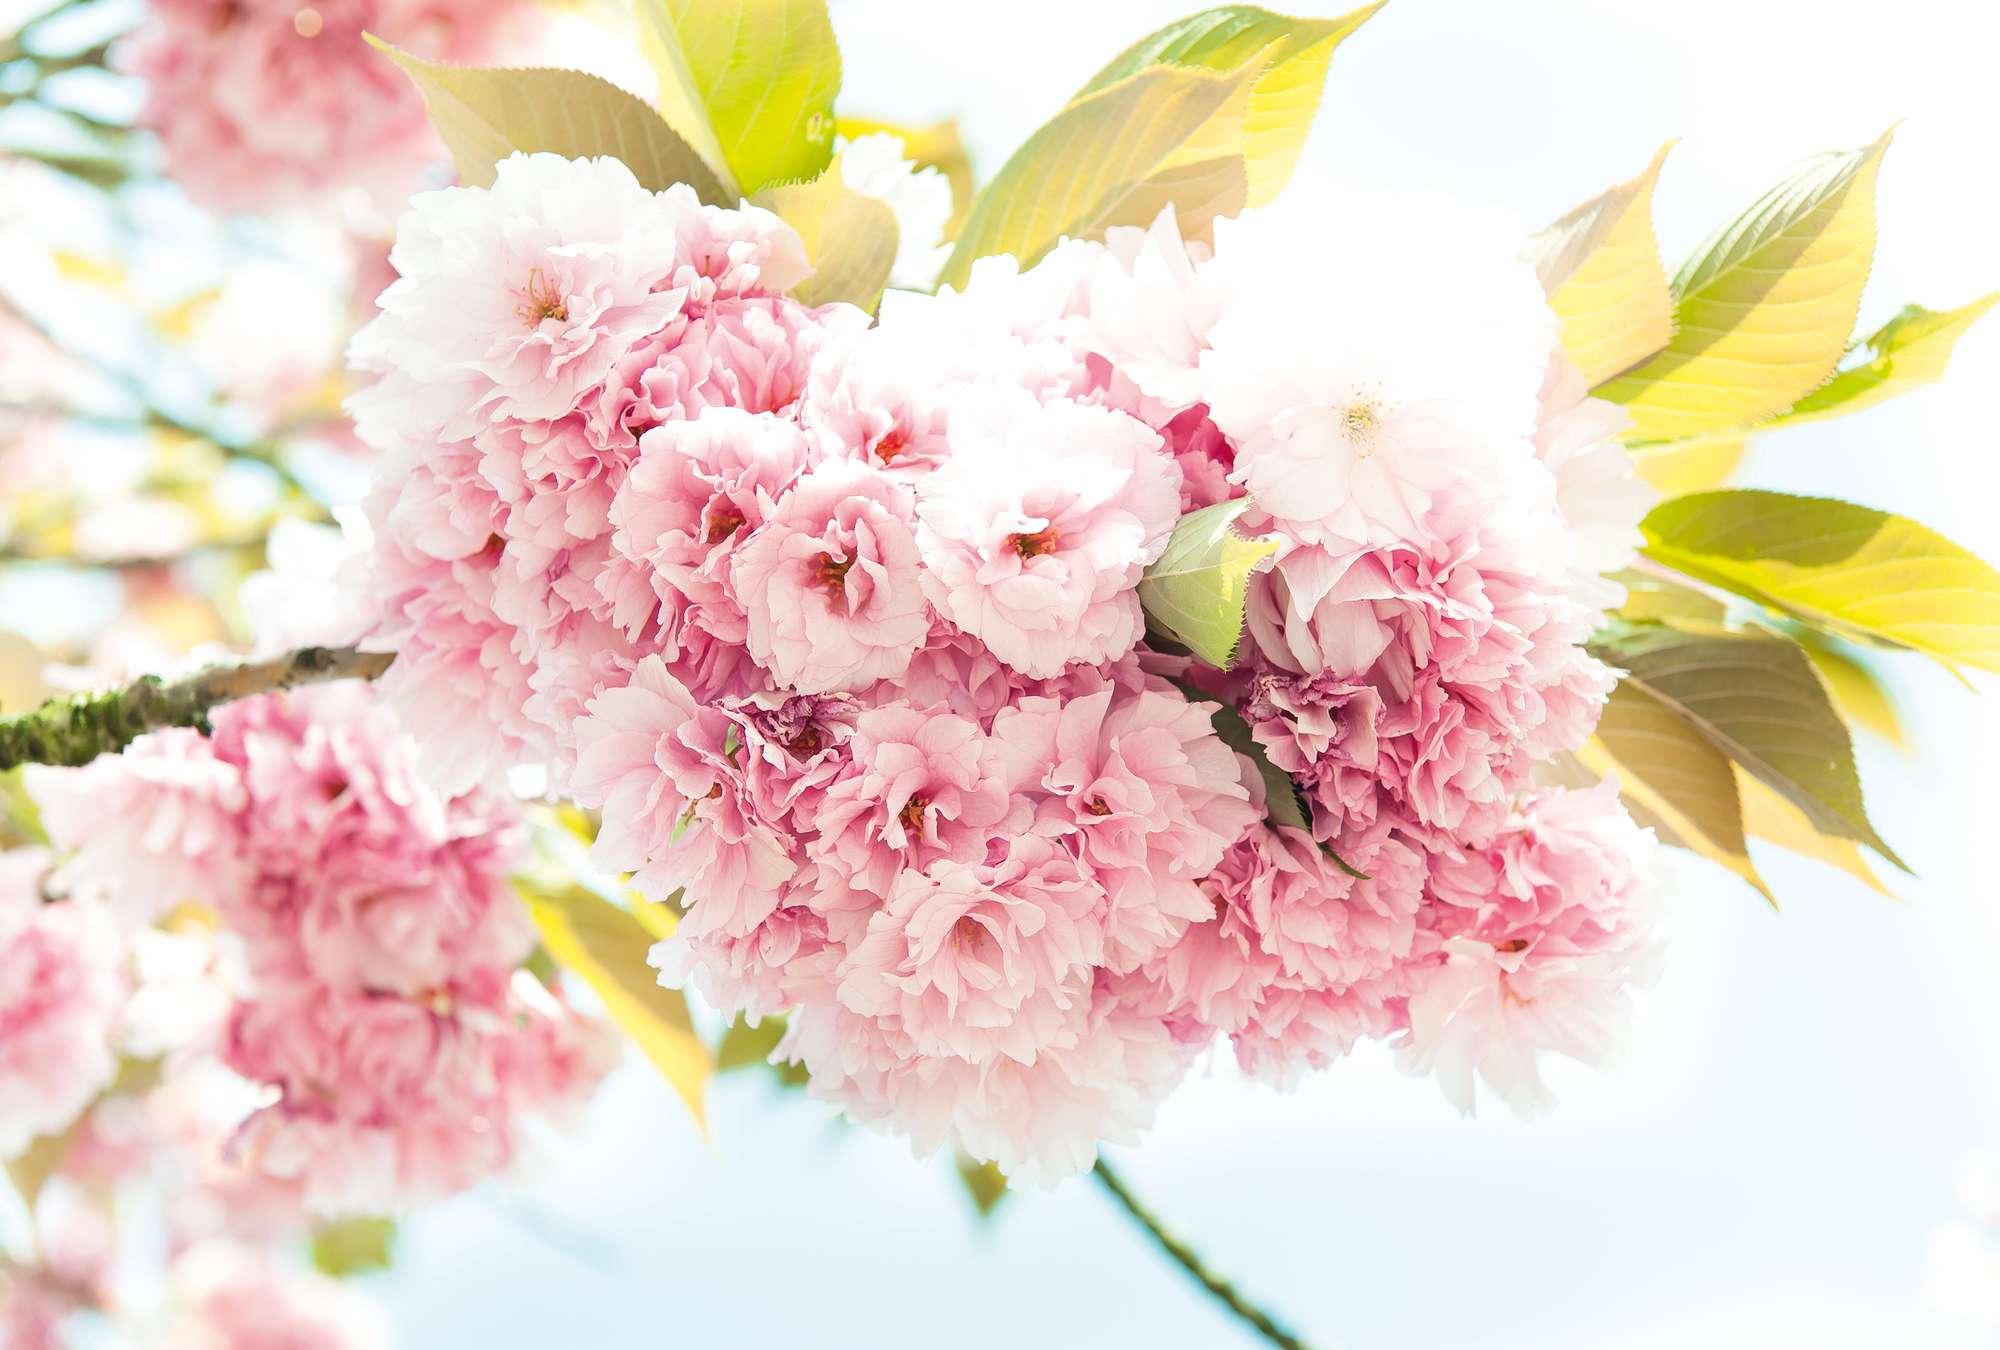             Lente, roze - Delicate bloemen in 3D-look en XXL-formaat
        